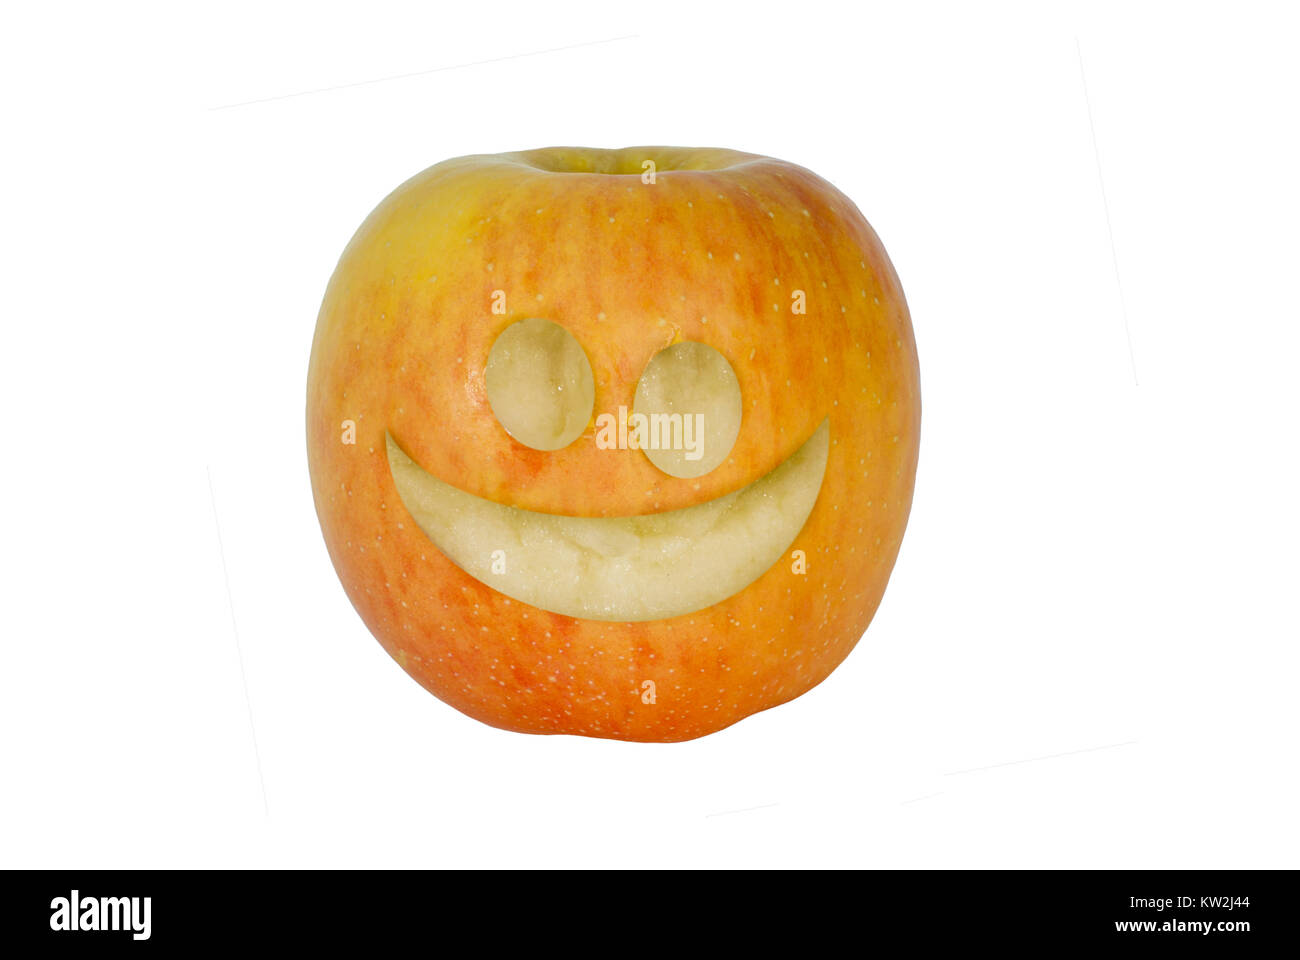 Apple isolés avec un drôle de visage sculpté sur elle Banque D'Images